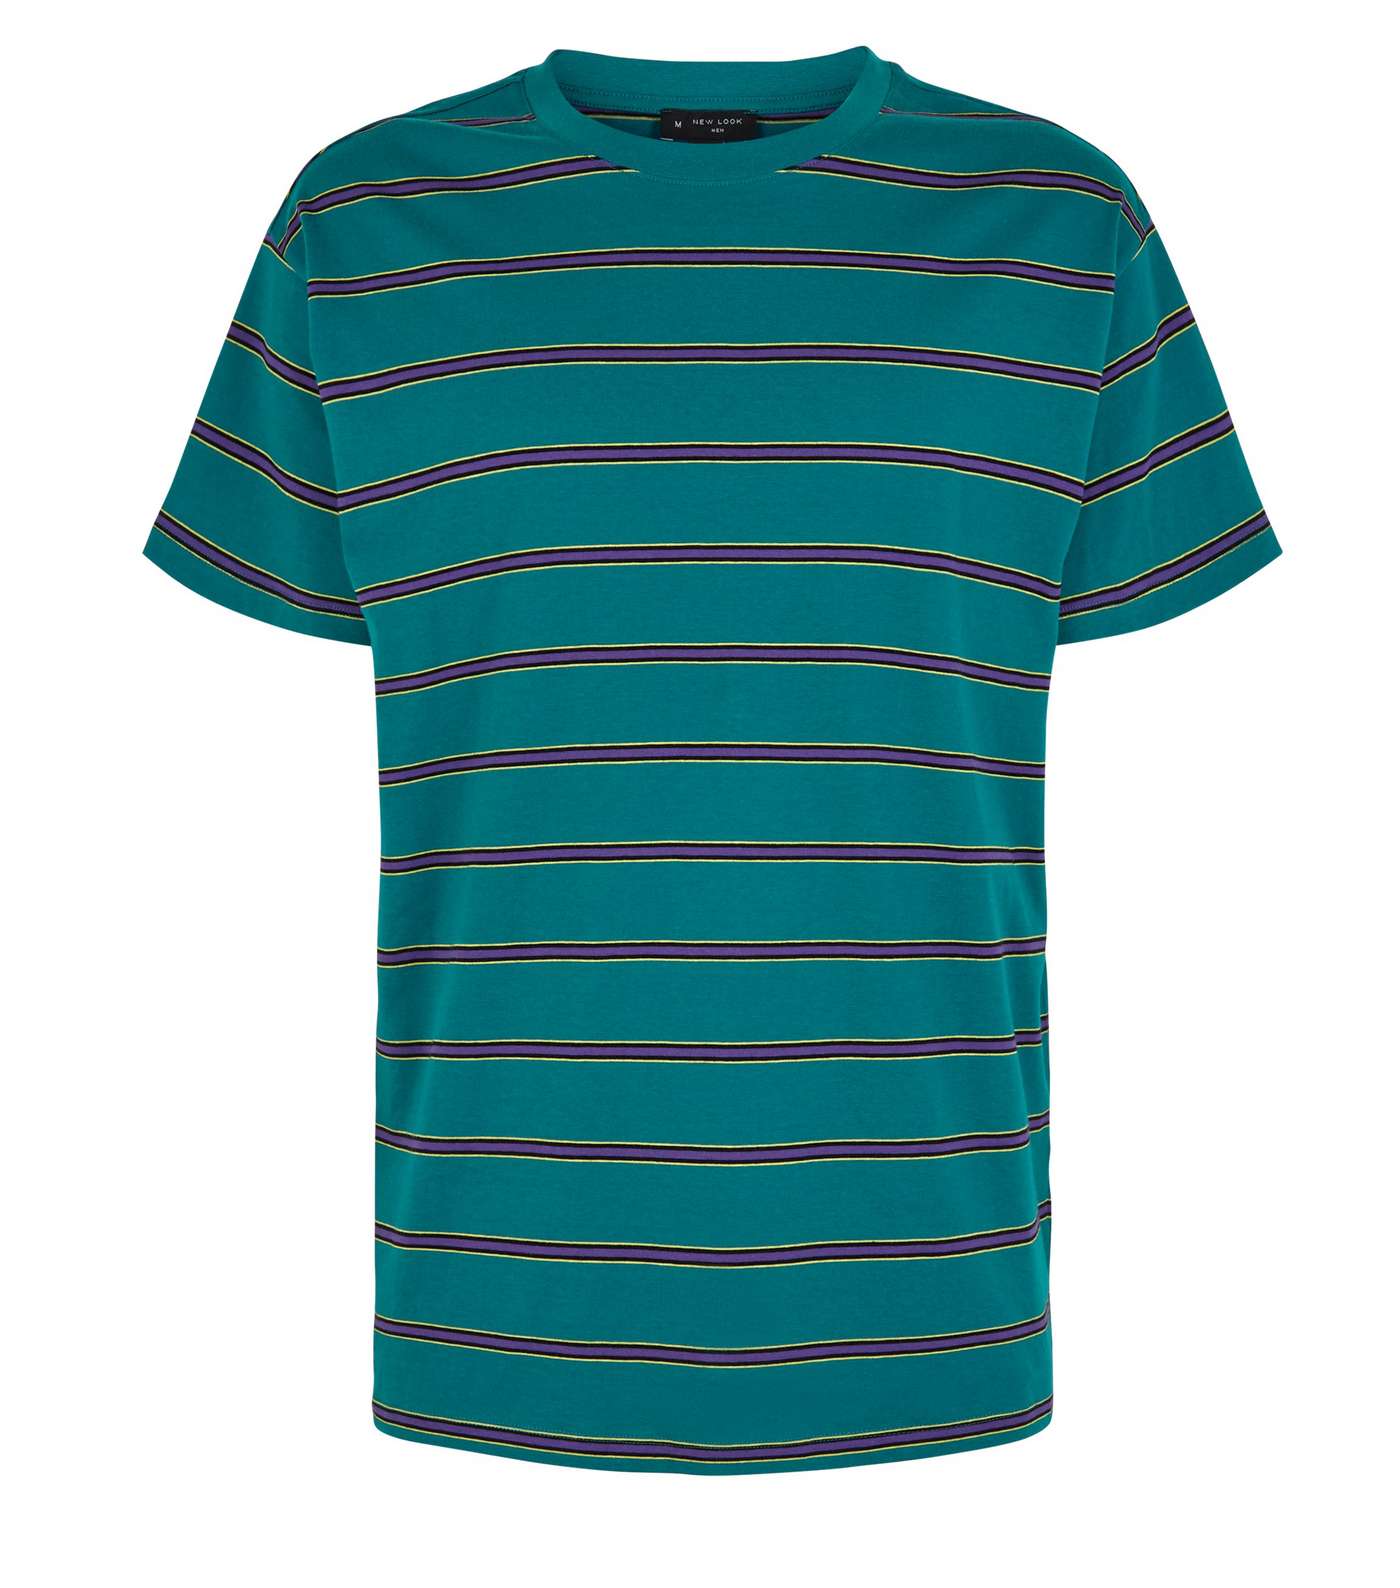 Teal Stripe Crew T-Shirt Image 4